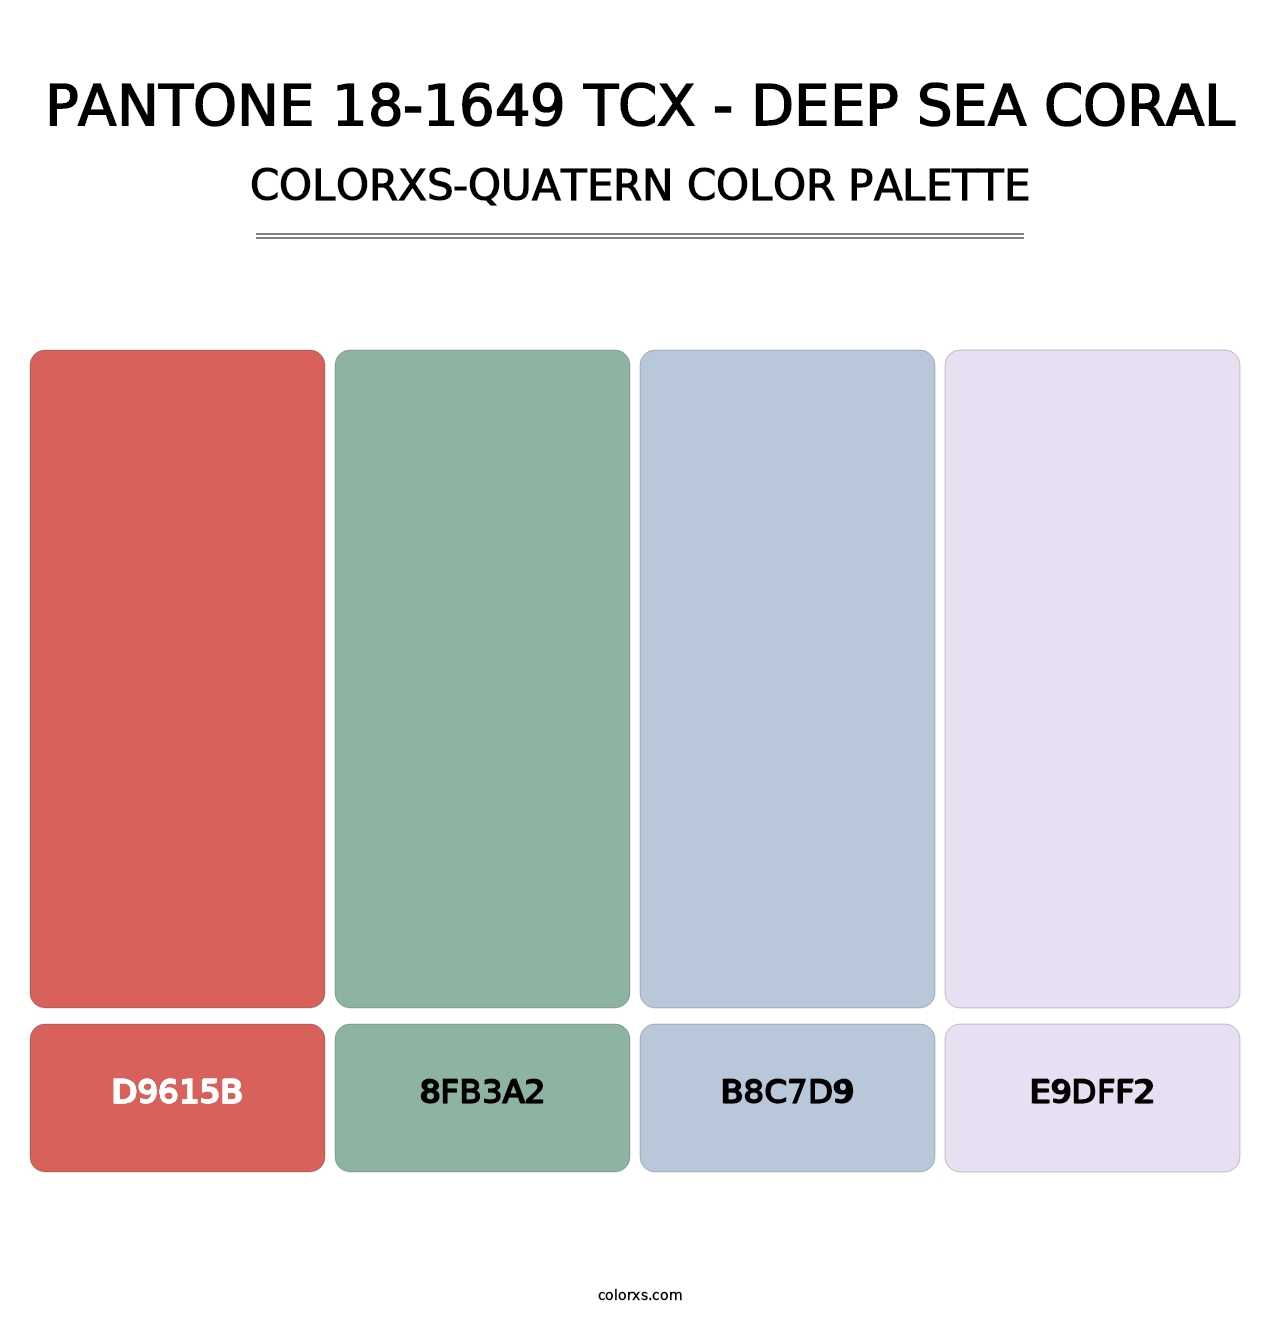 PANTONE 18-1649 TCX - Deep Sea Coral - Colorxs Quatern Palette